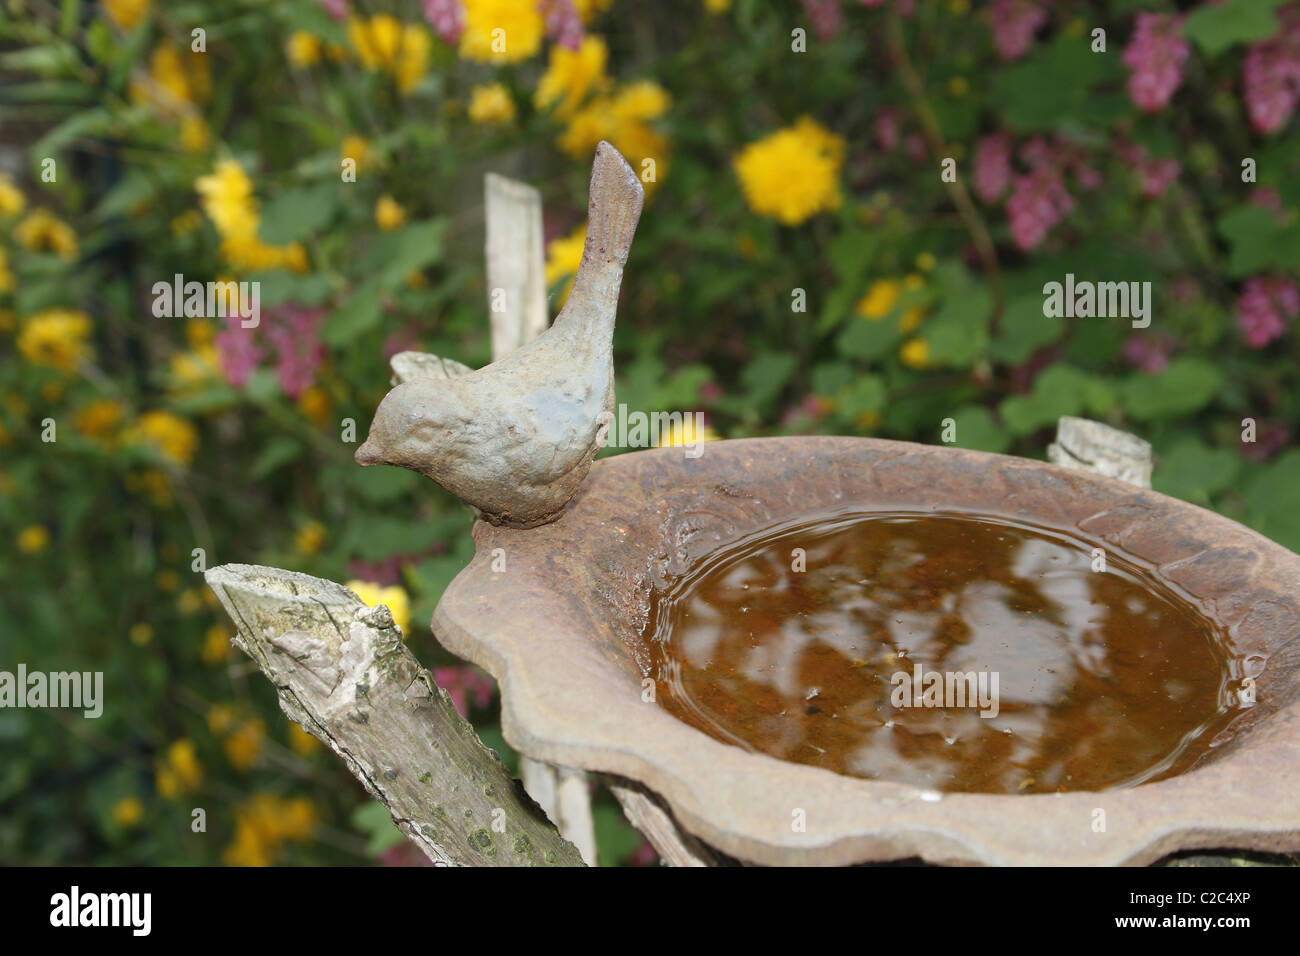 metal birdbath in garden Stock Photo